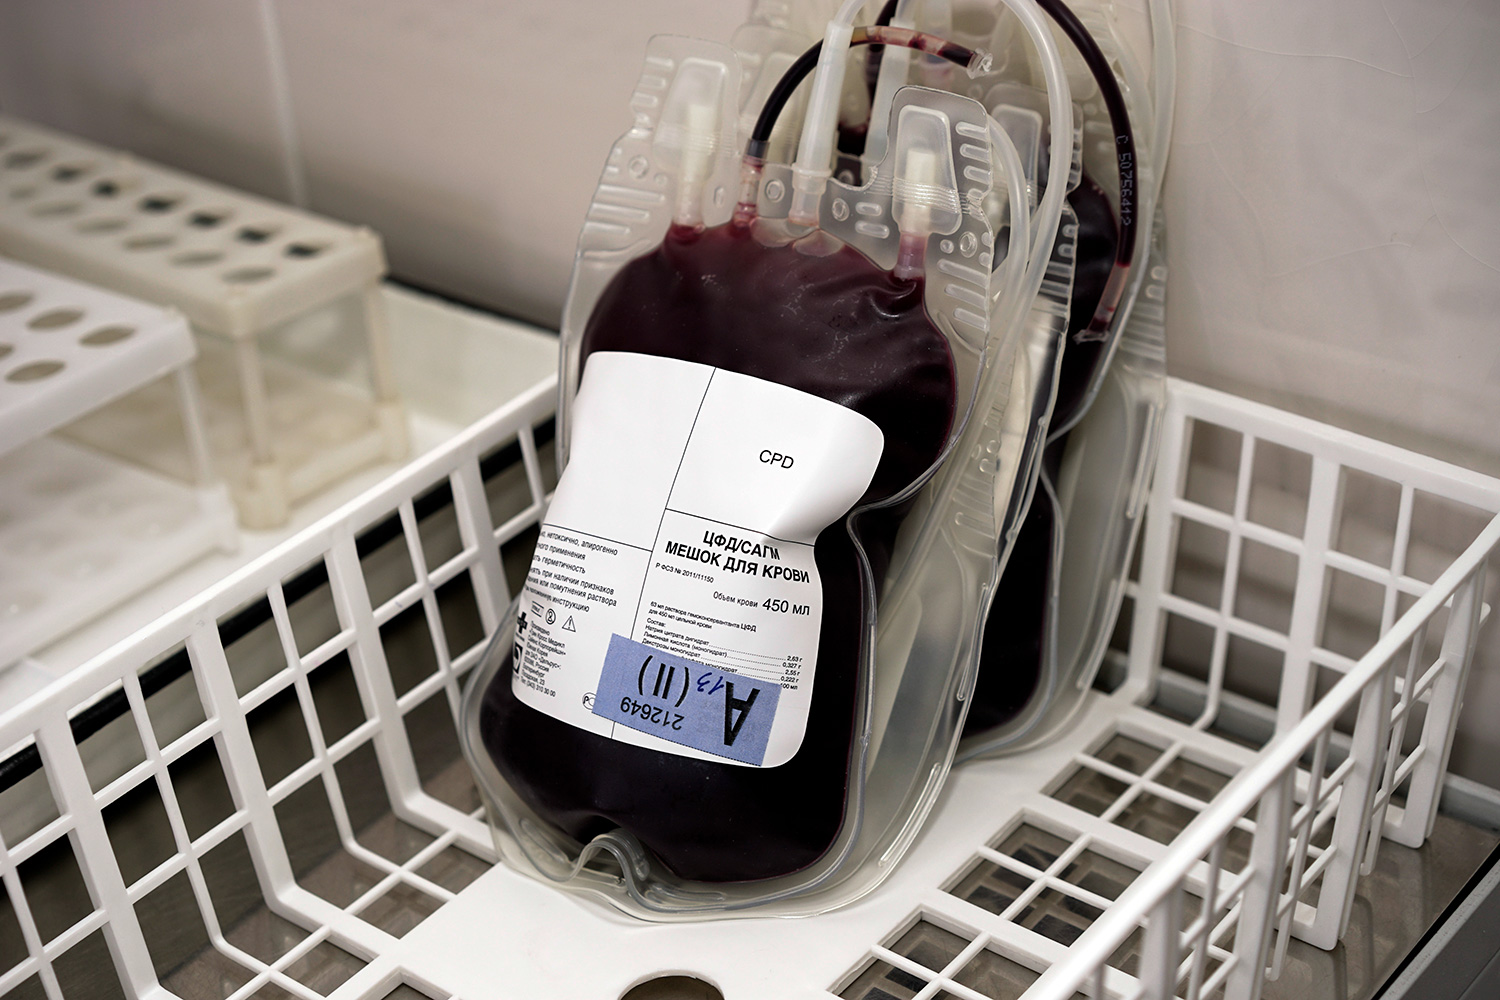 Безопасности донорской крови и ее компонентов. Транспортировка донорской крови. Холодильник с донорской кровью. Холодильники с кровью доноров.